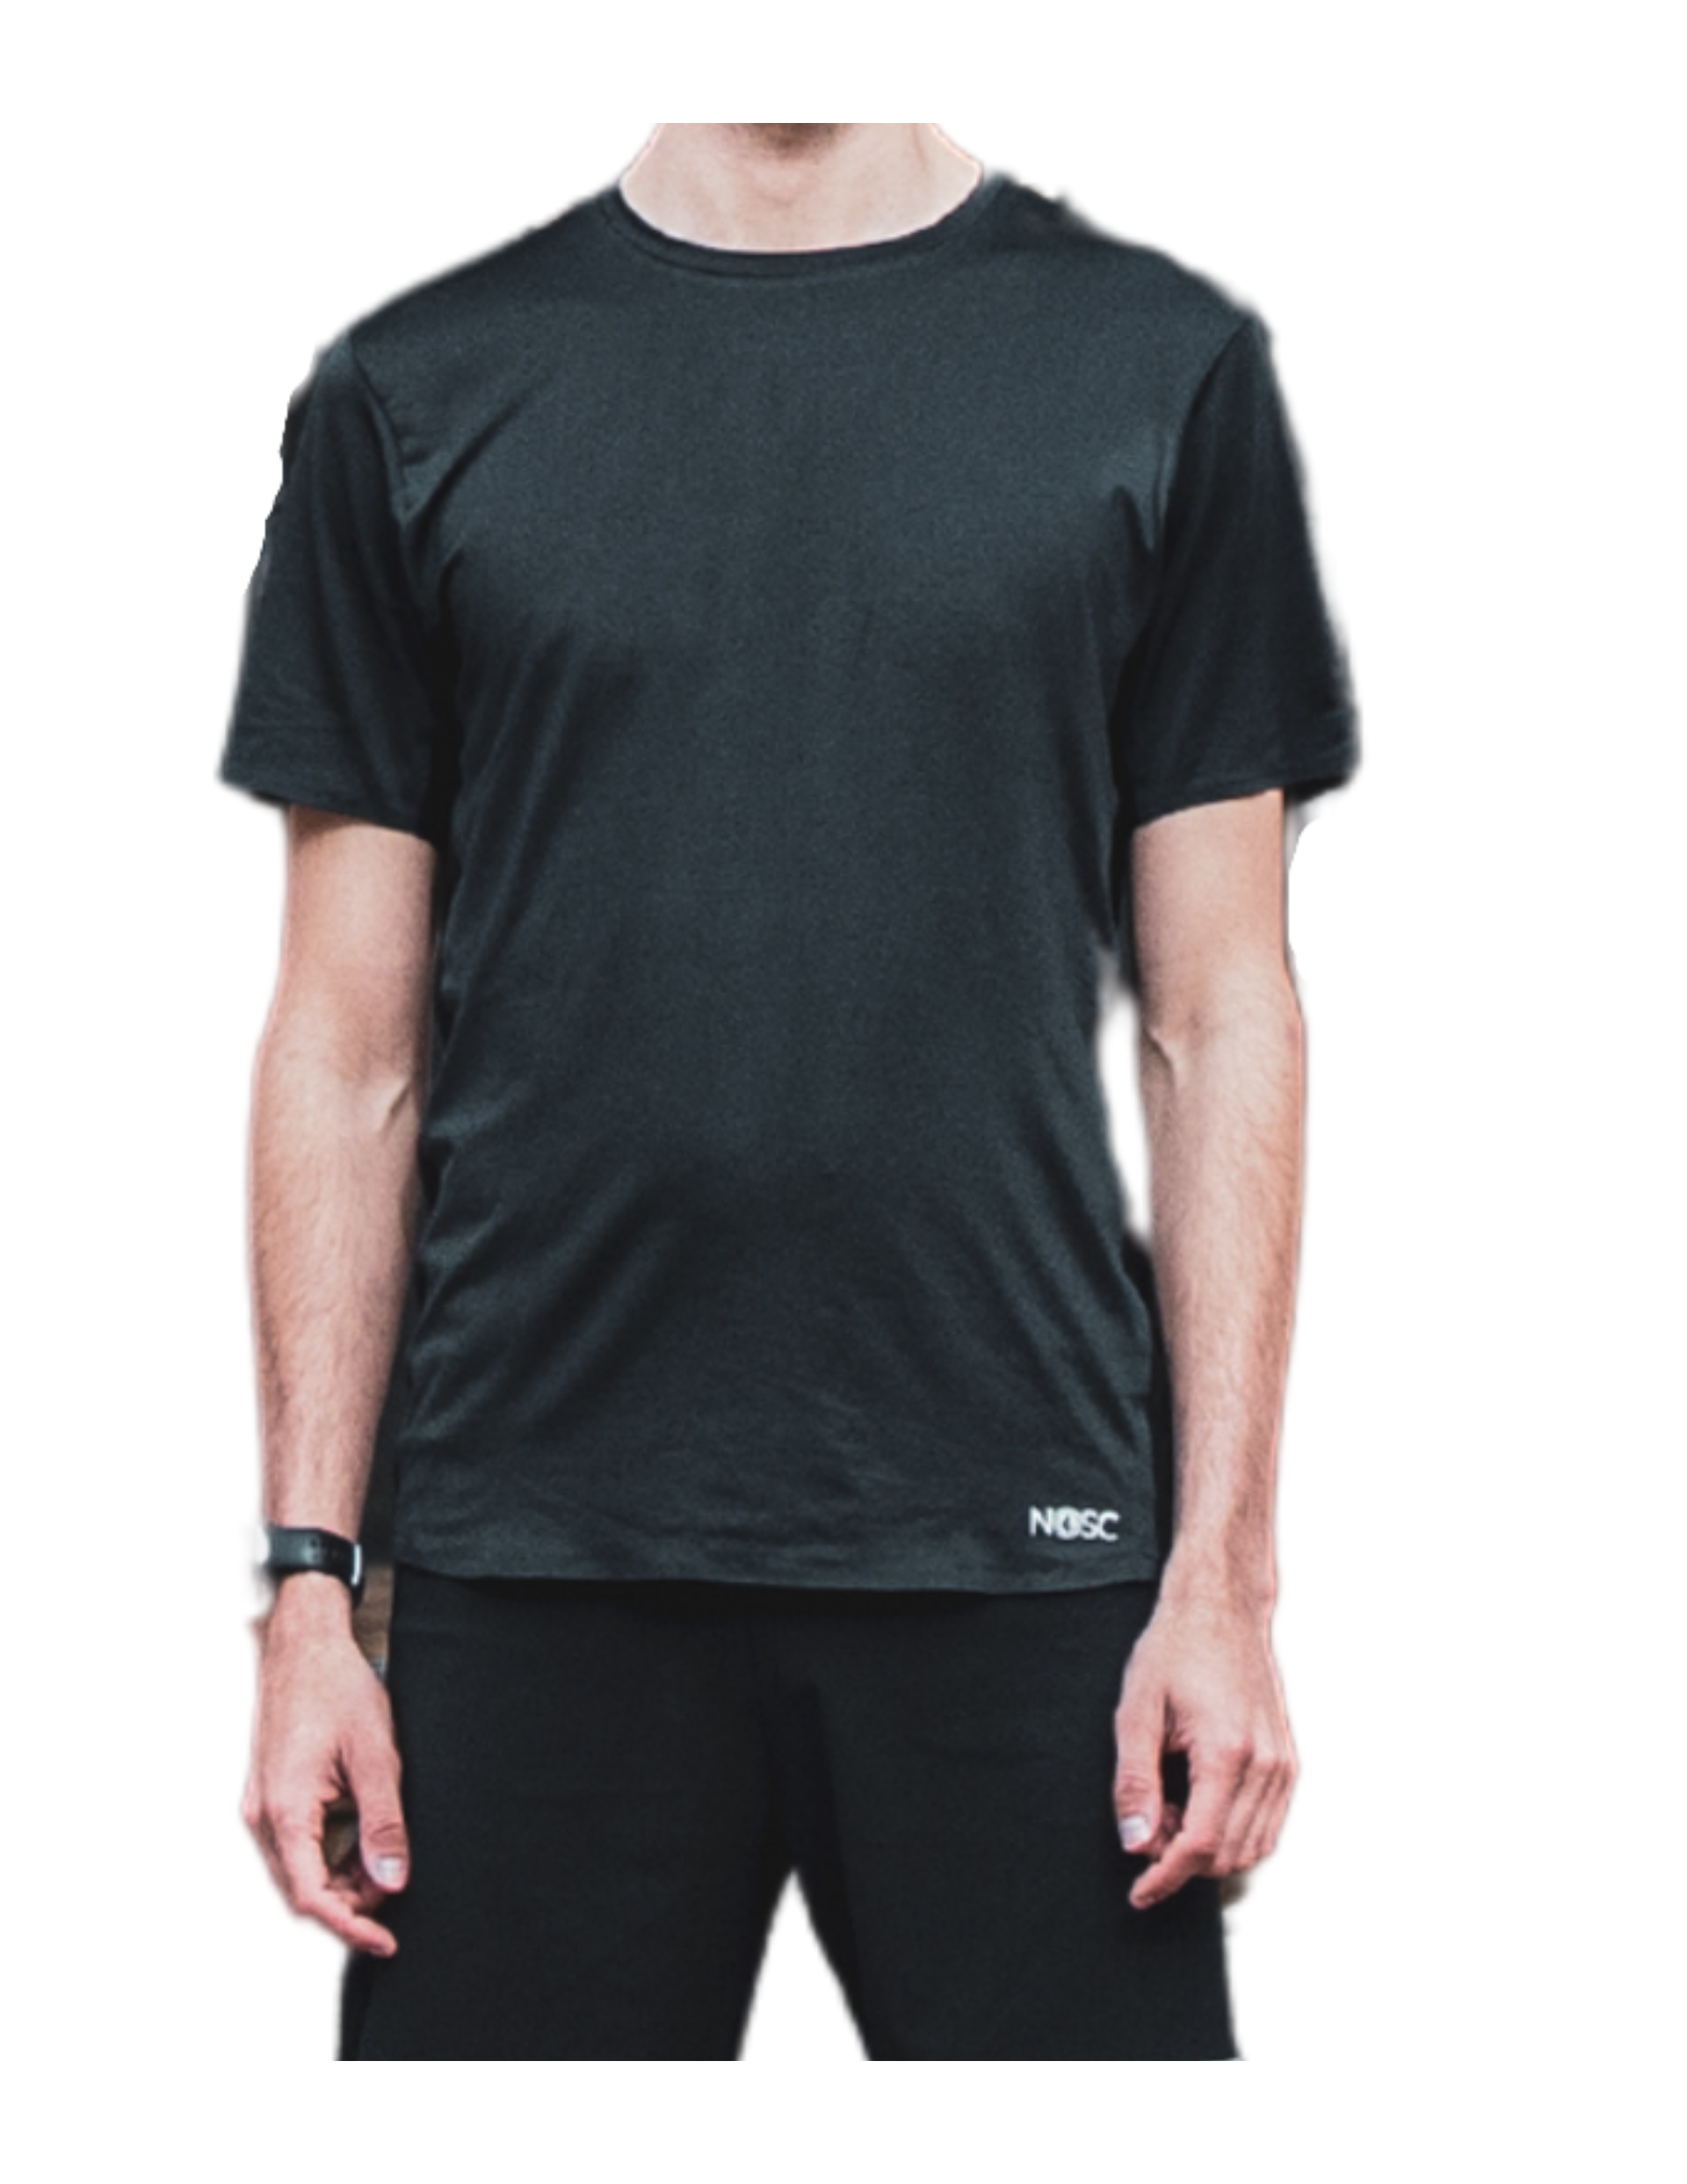 T-Shirt de Running pour homme Nosc Wild Manches Courtes Noir